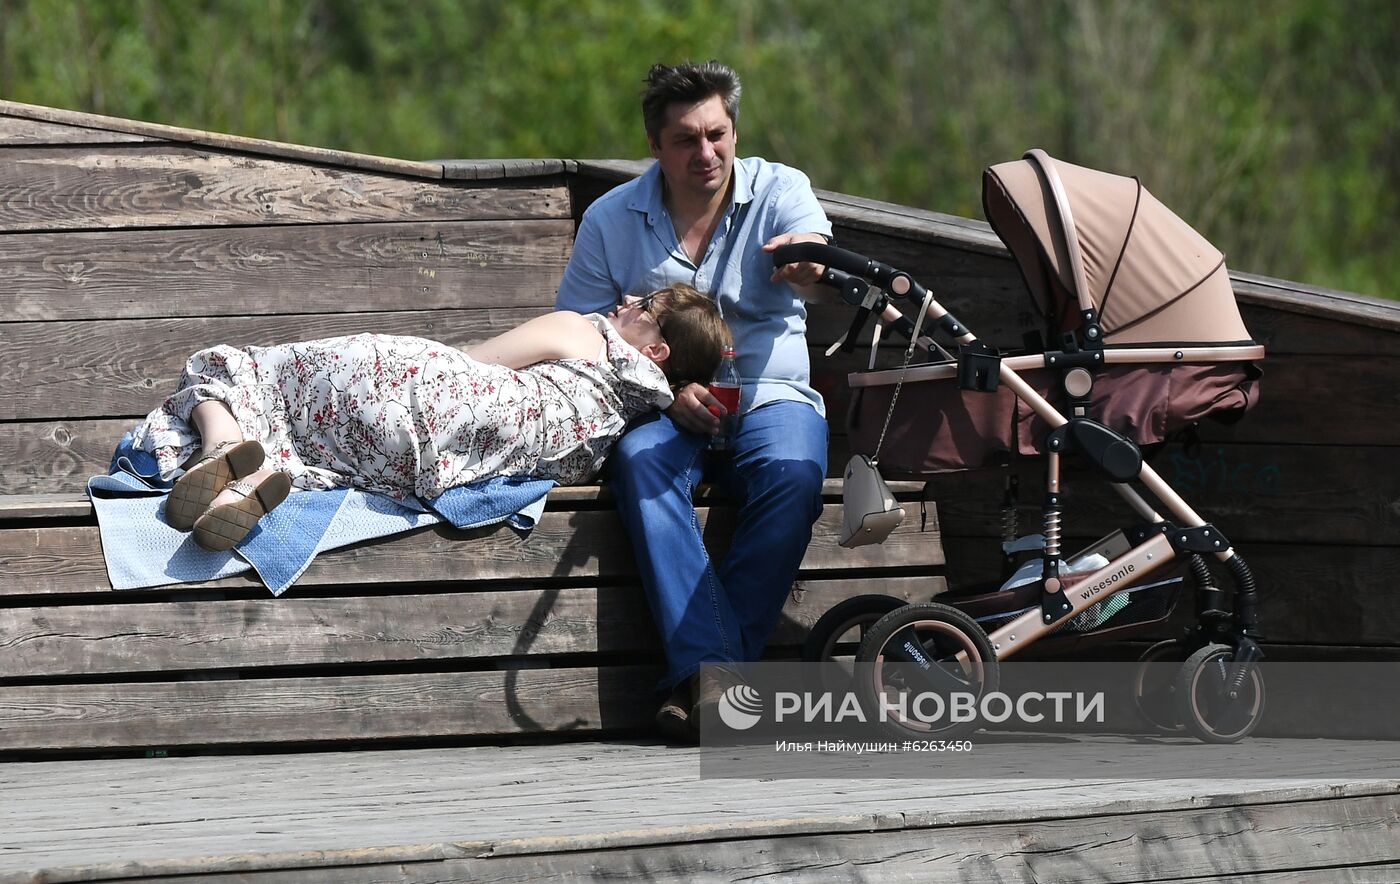 Летний отдых жителей Красноярска во время режима самоизоляции